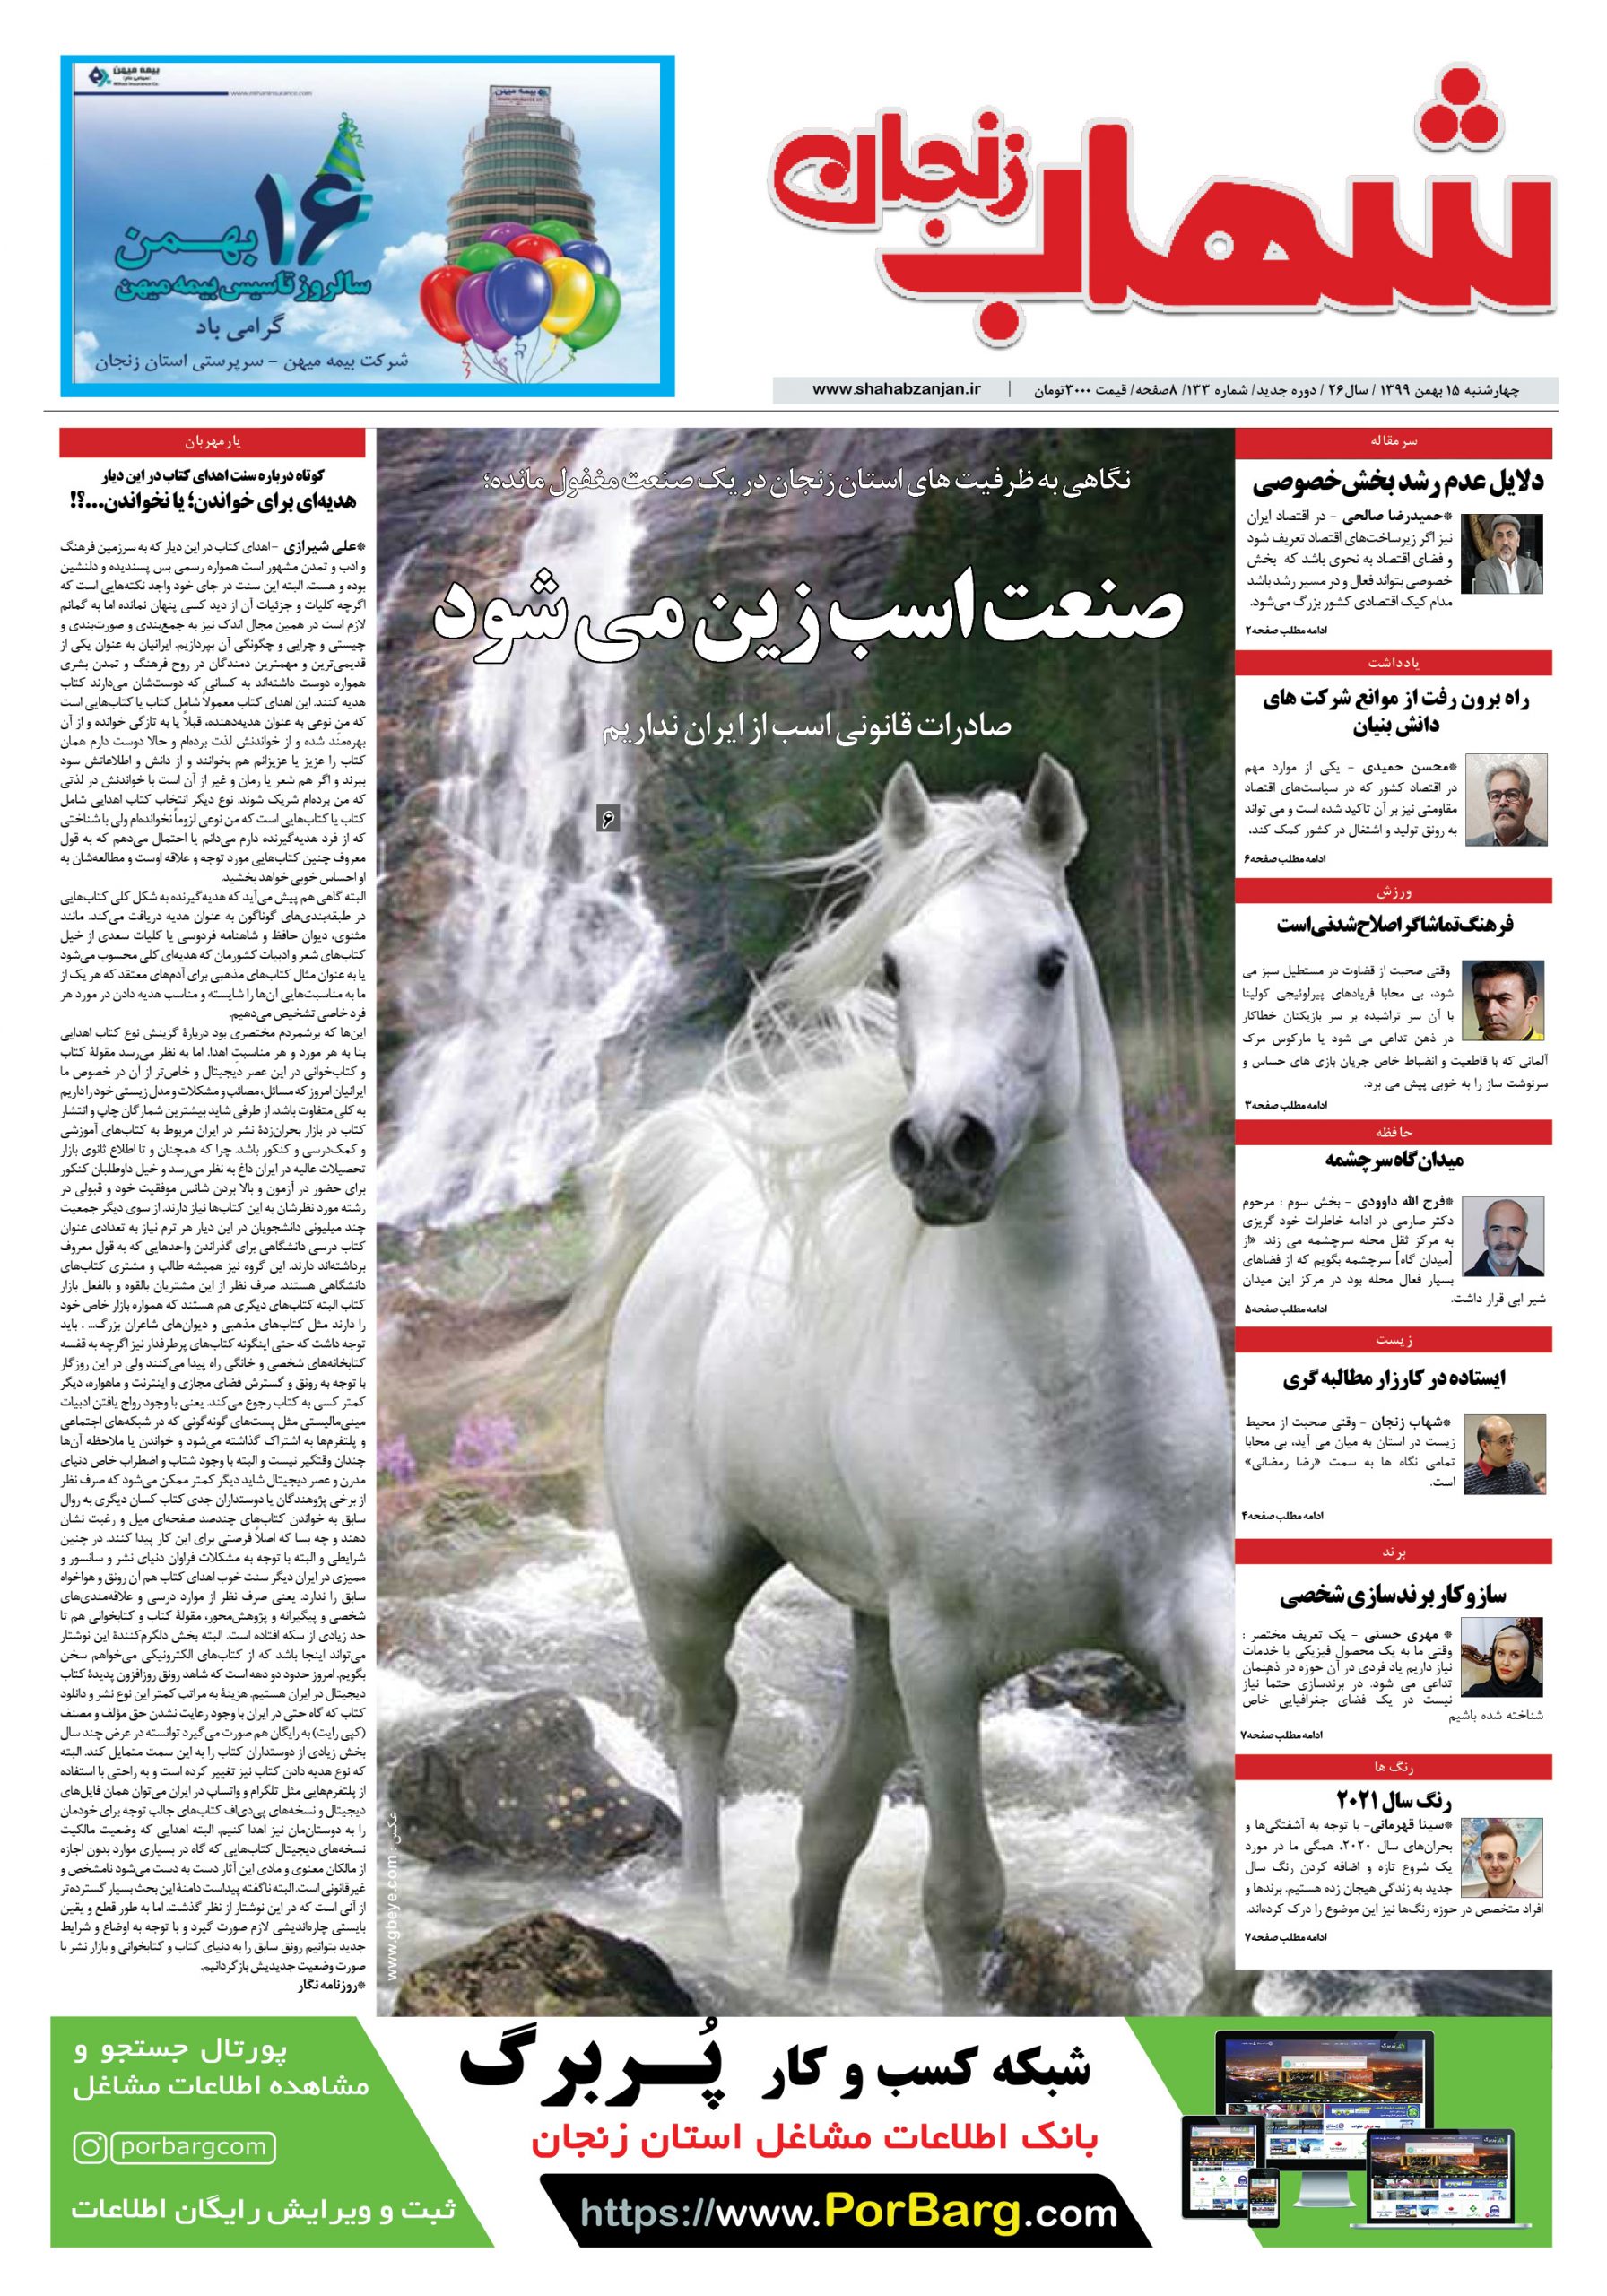 شماره جدید شهاب زنجان منتشر شد؛از صنعت اسب سواری تا مصاحبه با داور لیگ برتری فوتبال